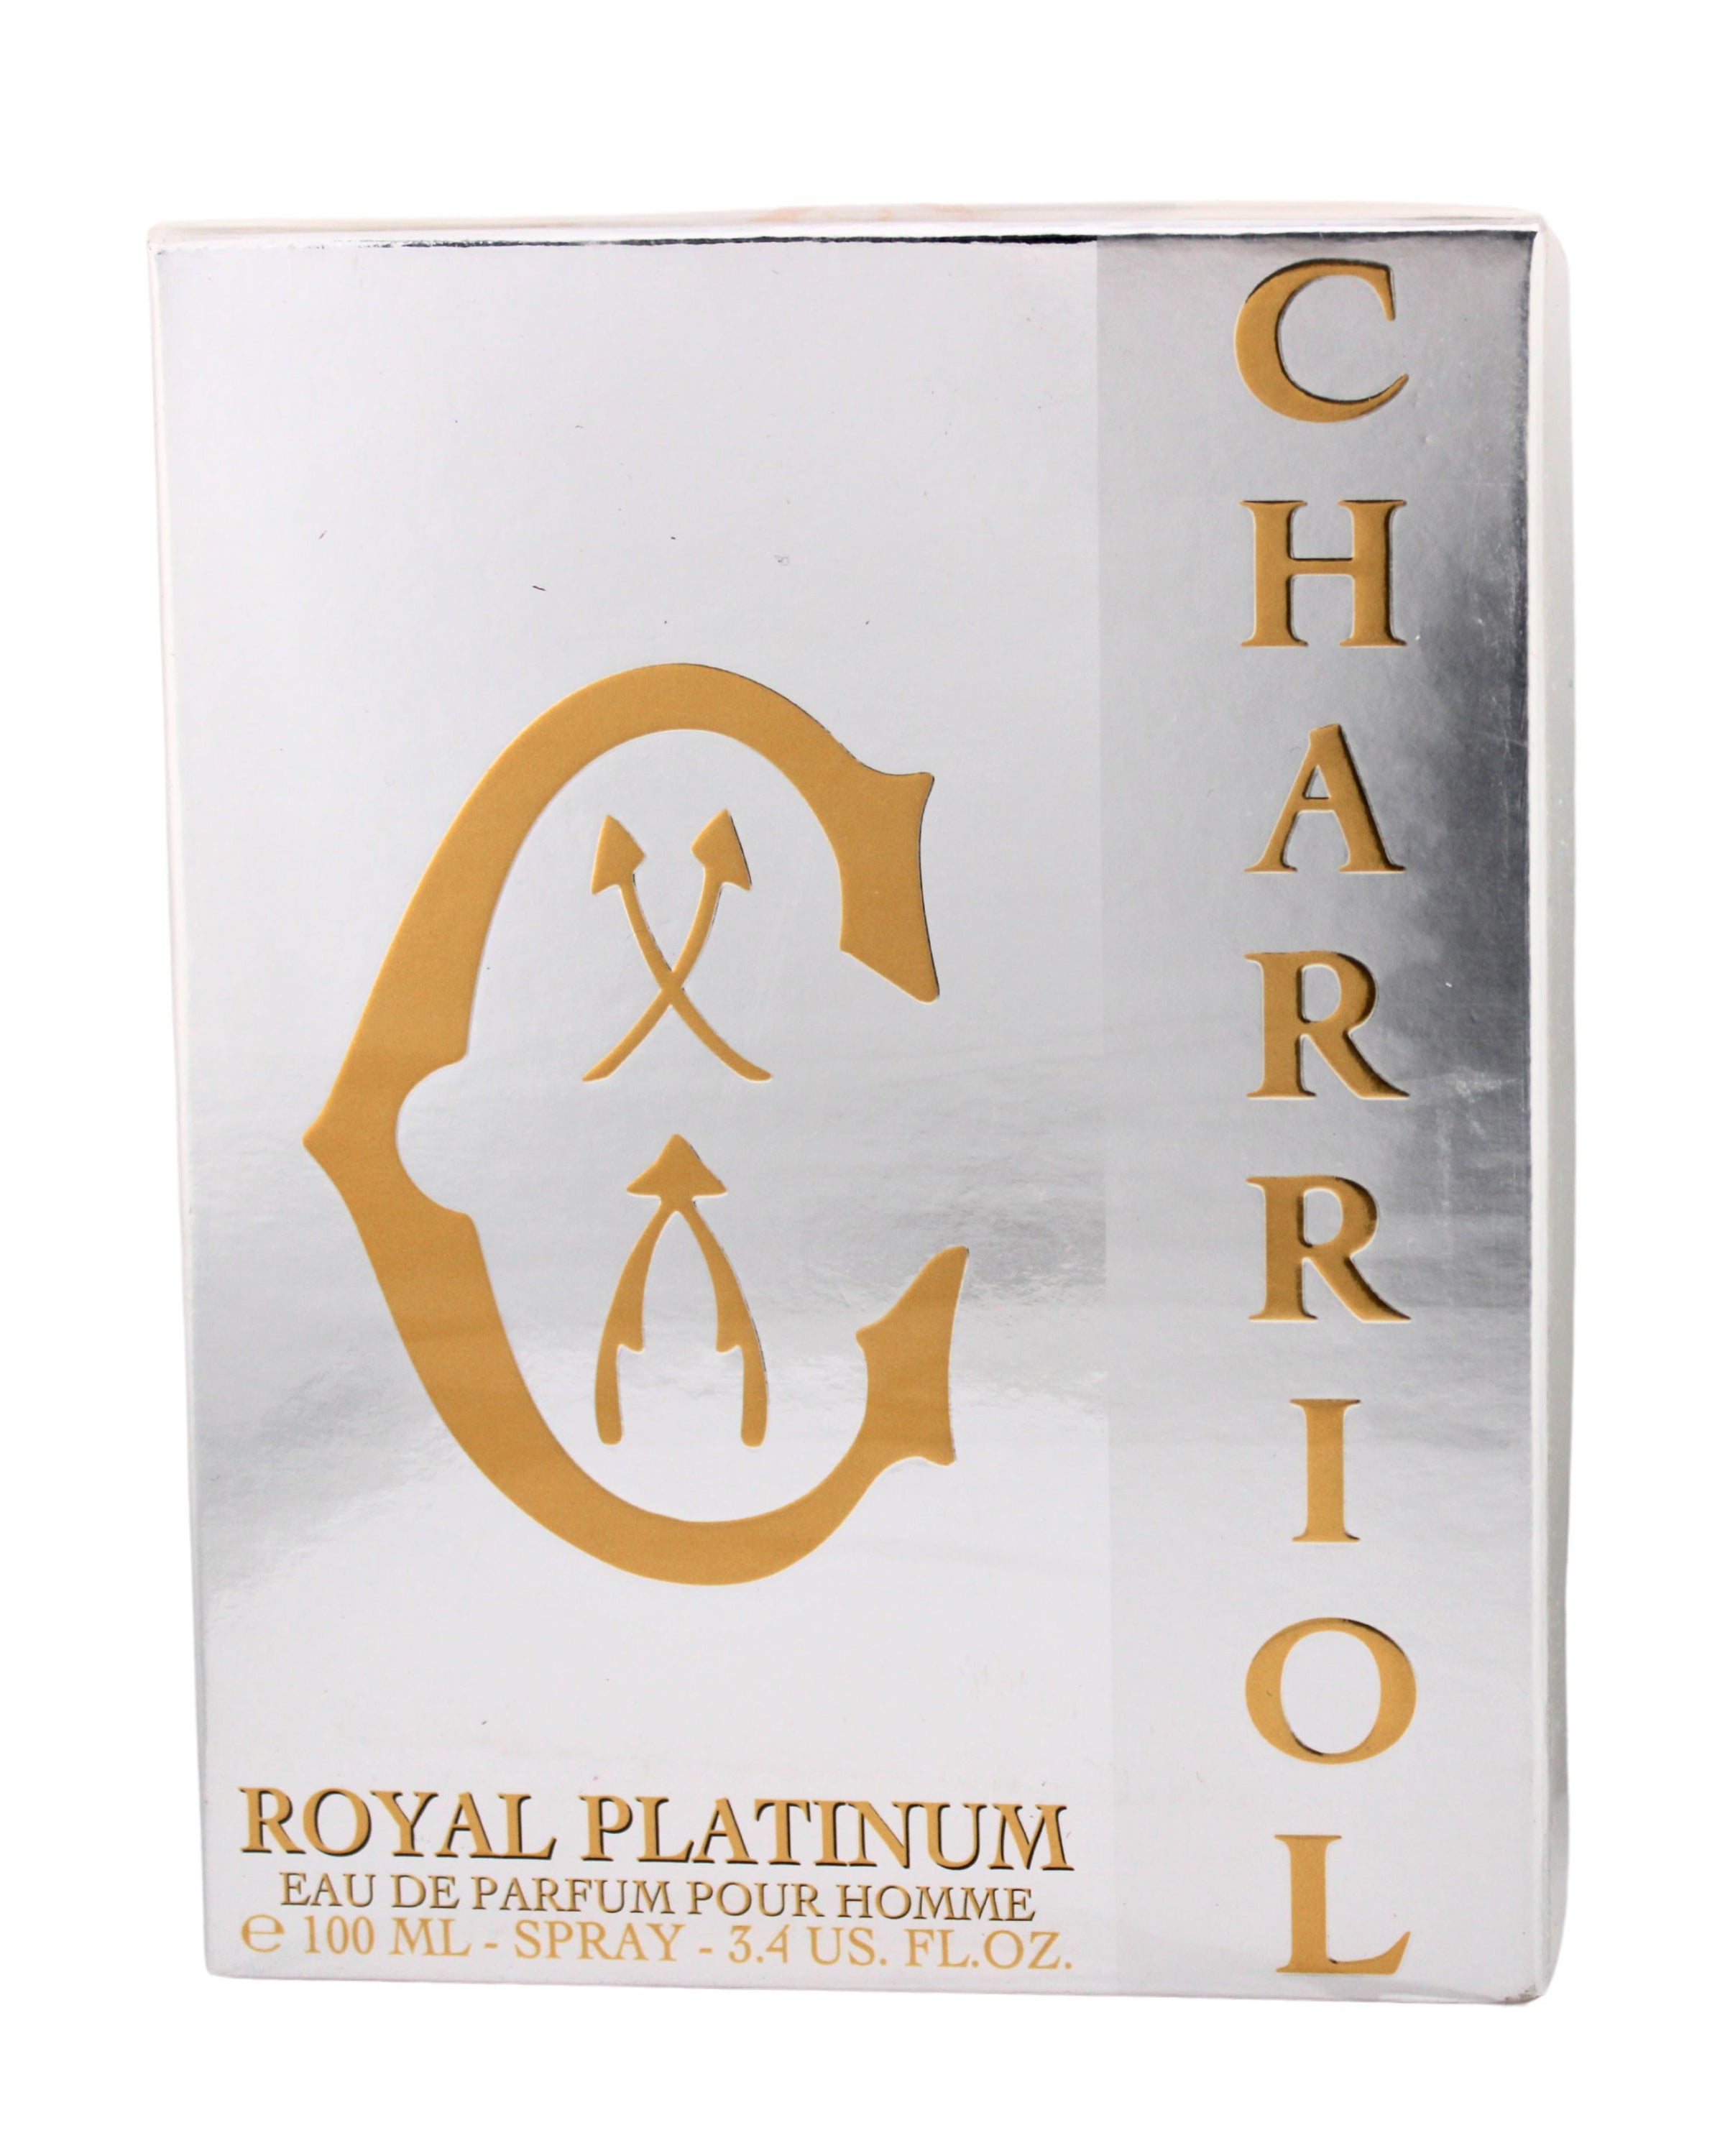 Charriol Royal Platinum Eau de Parfum for Men